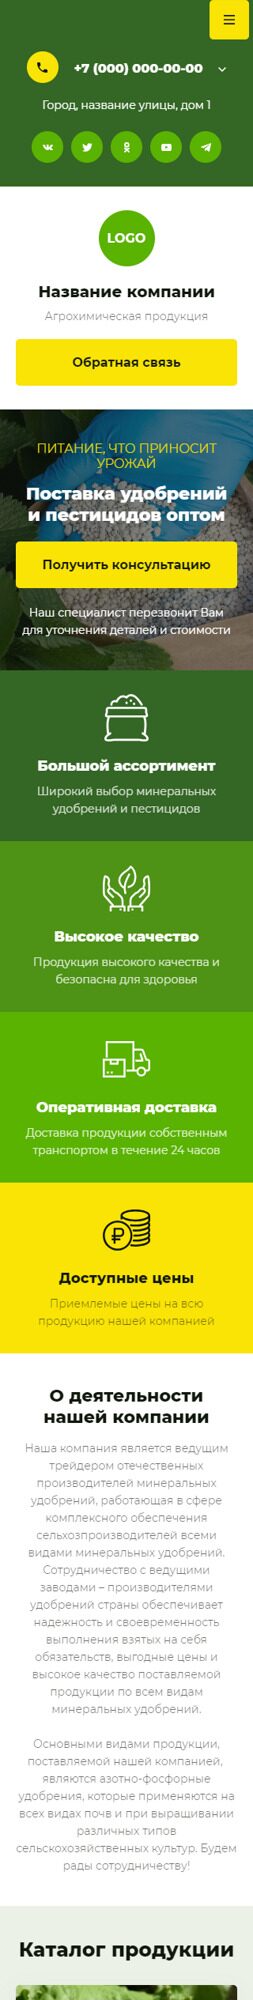 Готовый Сайт-Бизнес № 5985490 - Удобрения и агрохимические продукты (Мобильная версия)